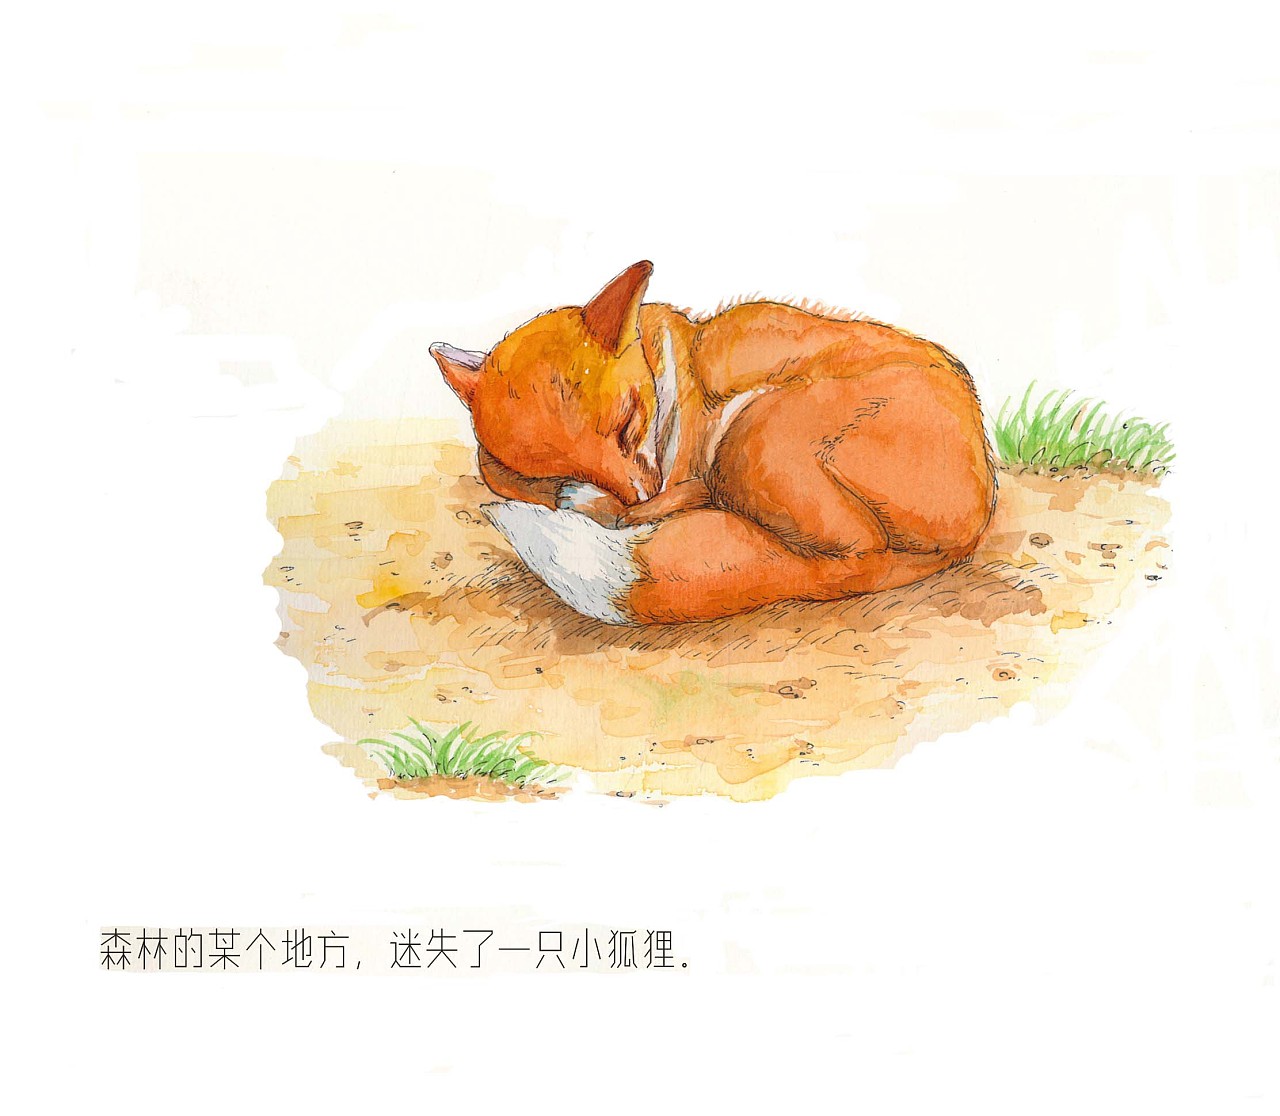 捡到一只小狐狸 - 堆糖，美图壁纸兴趣社区